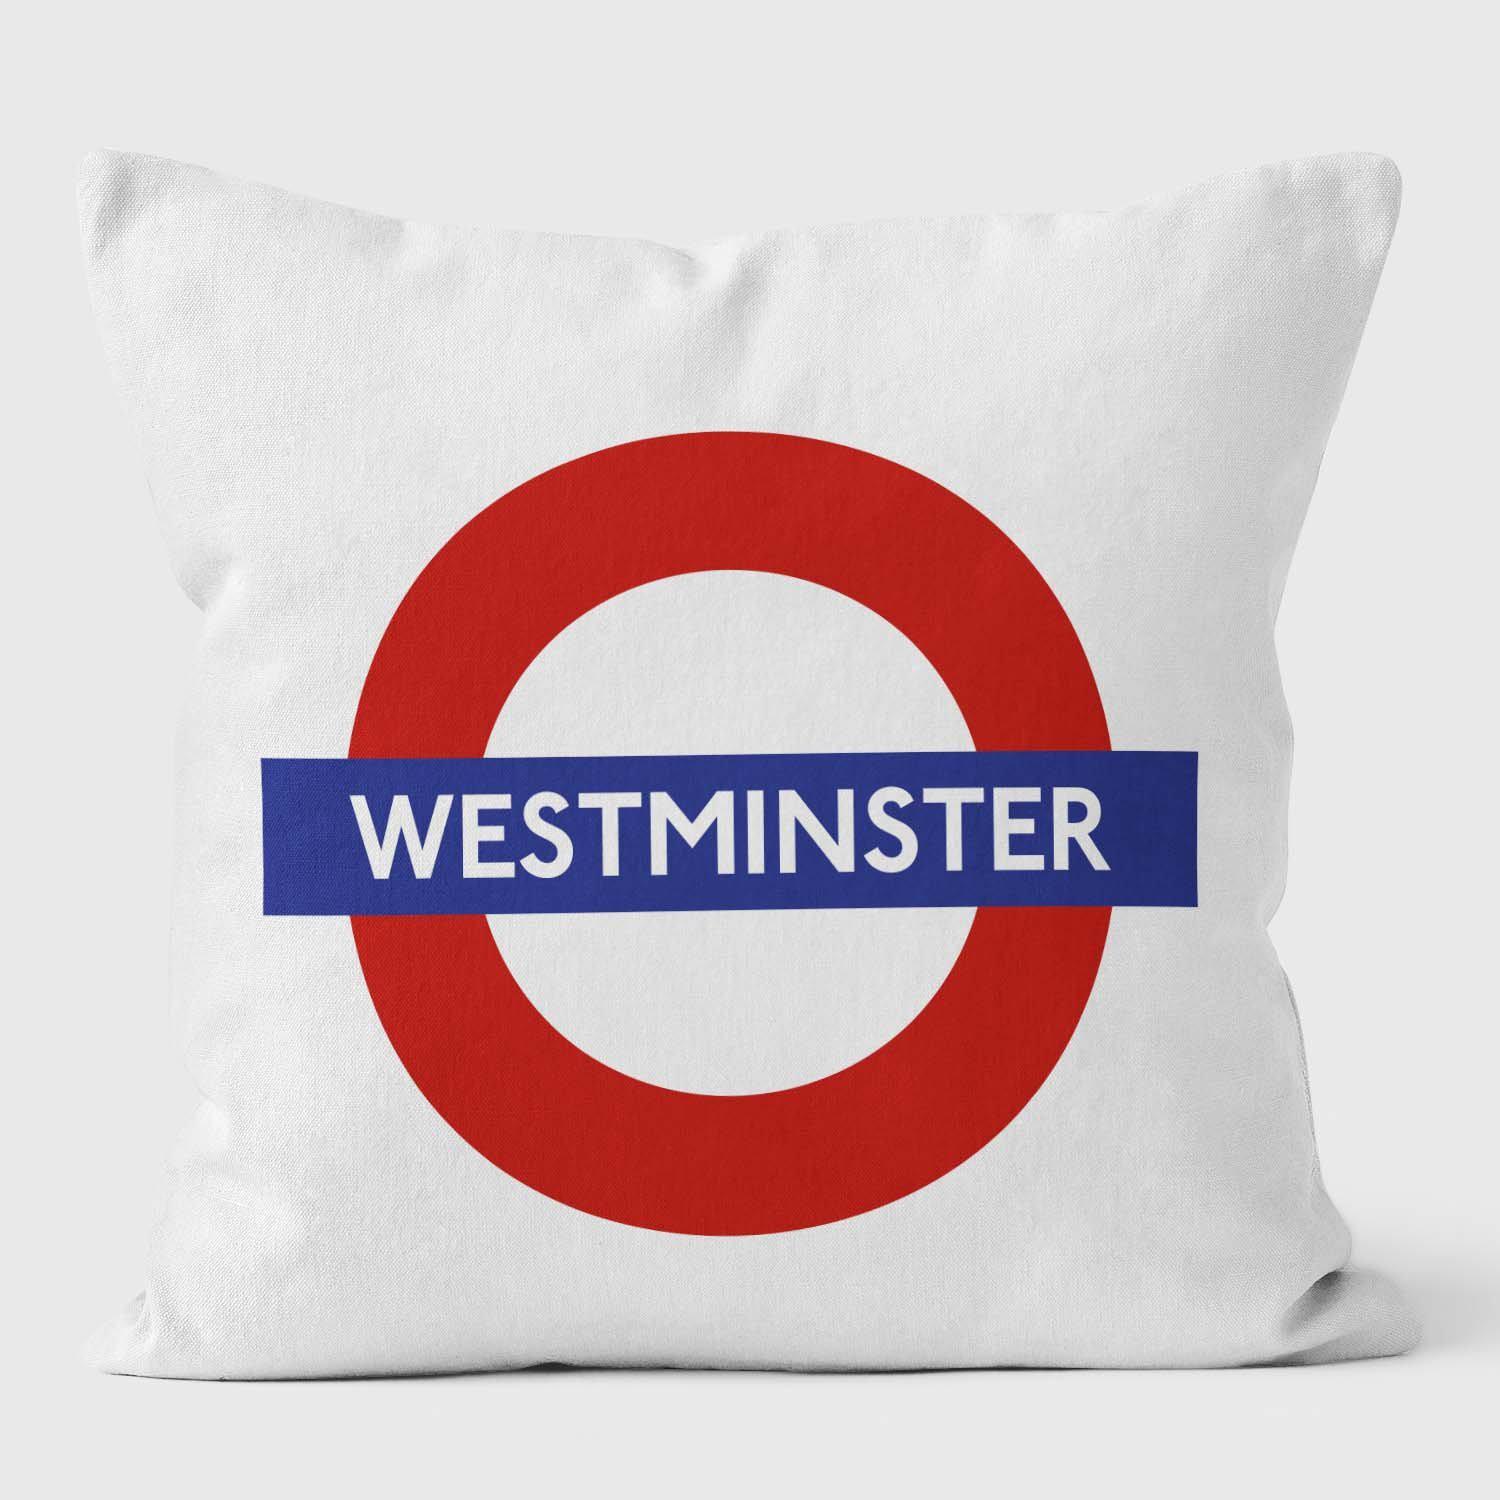 Westminster London Underground Tube Station Roundel Cushion - Handmade Cushions UK - WeLoveCushions